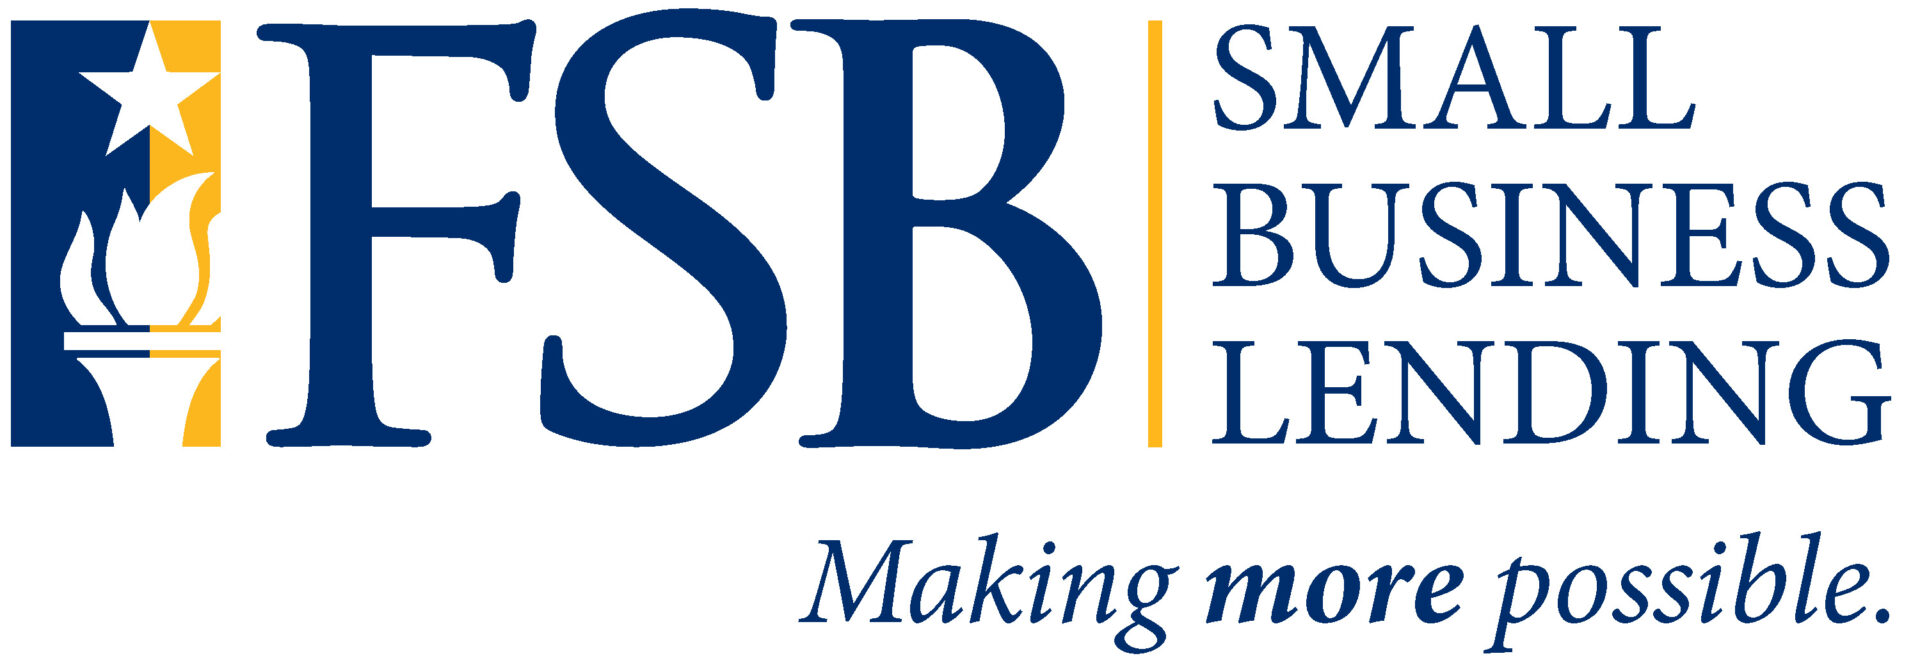 FSB Small Business Lending